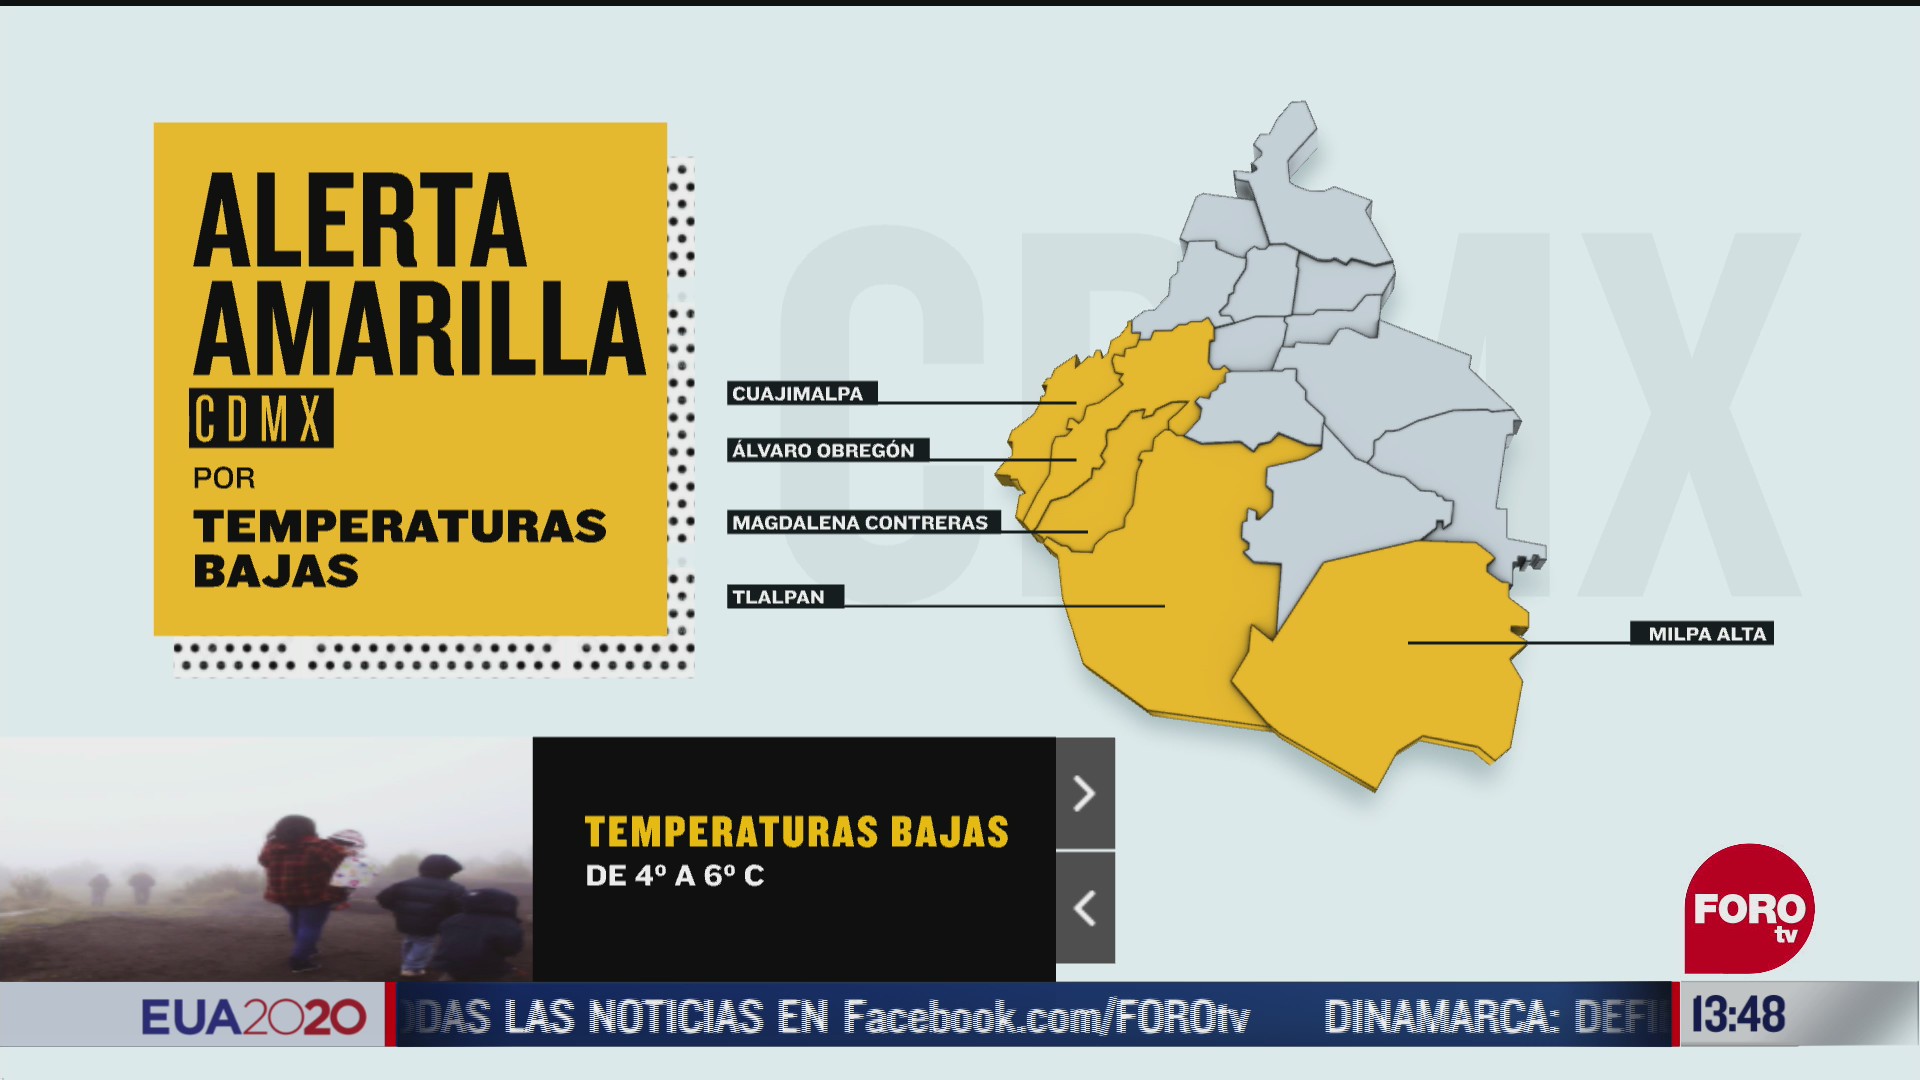 autoridades capitalinas activan la alerta amarilla debido a que se espera un fuerte descenso en la temperatura en alvaro obregon cuajimalpa magdalena contreras milpa alta y tlalpan